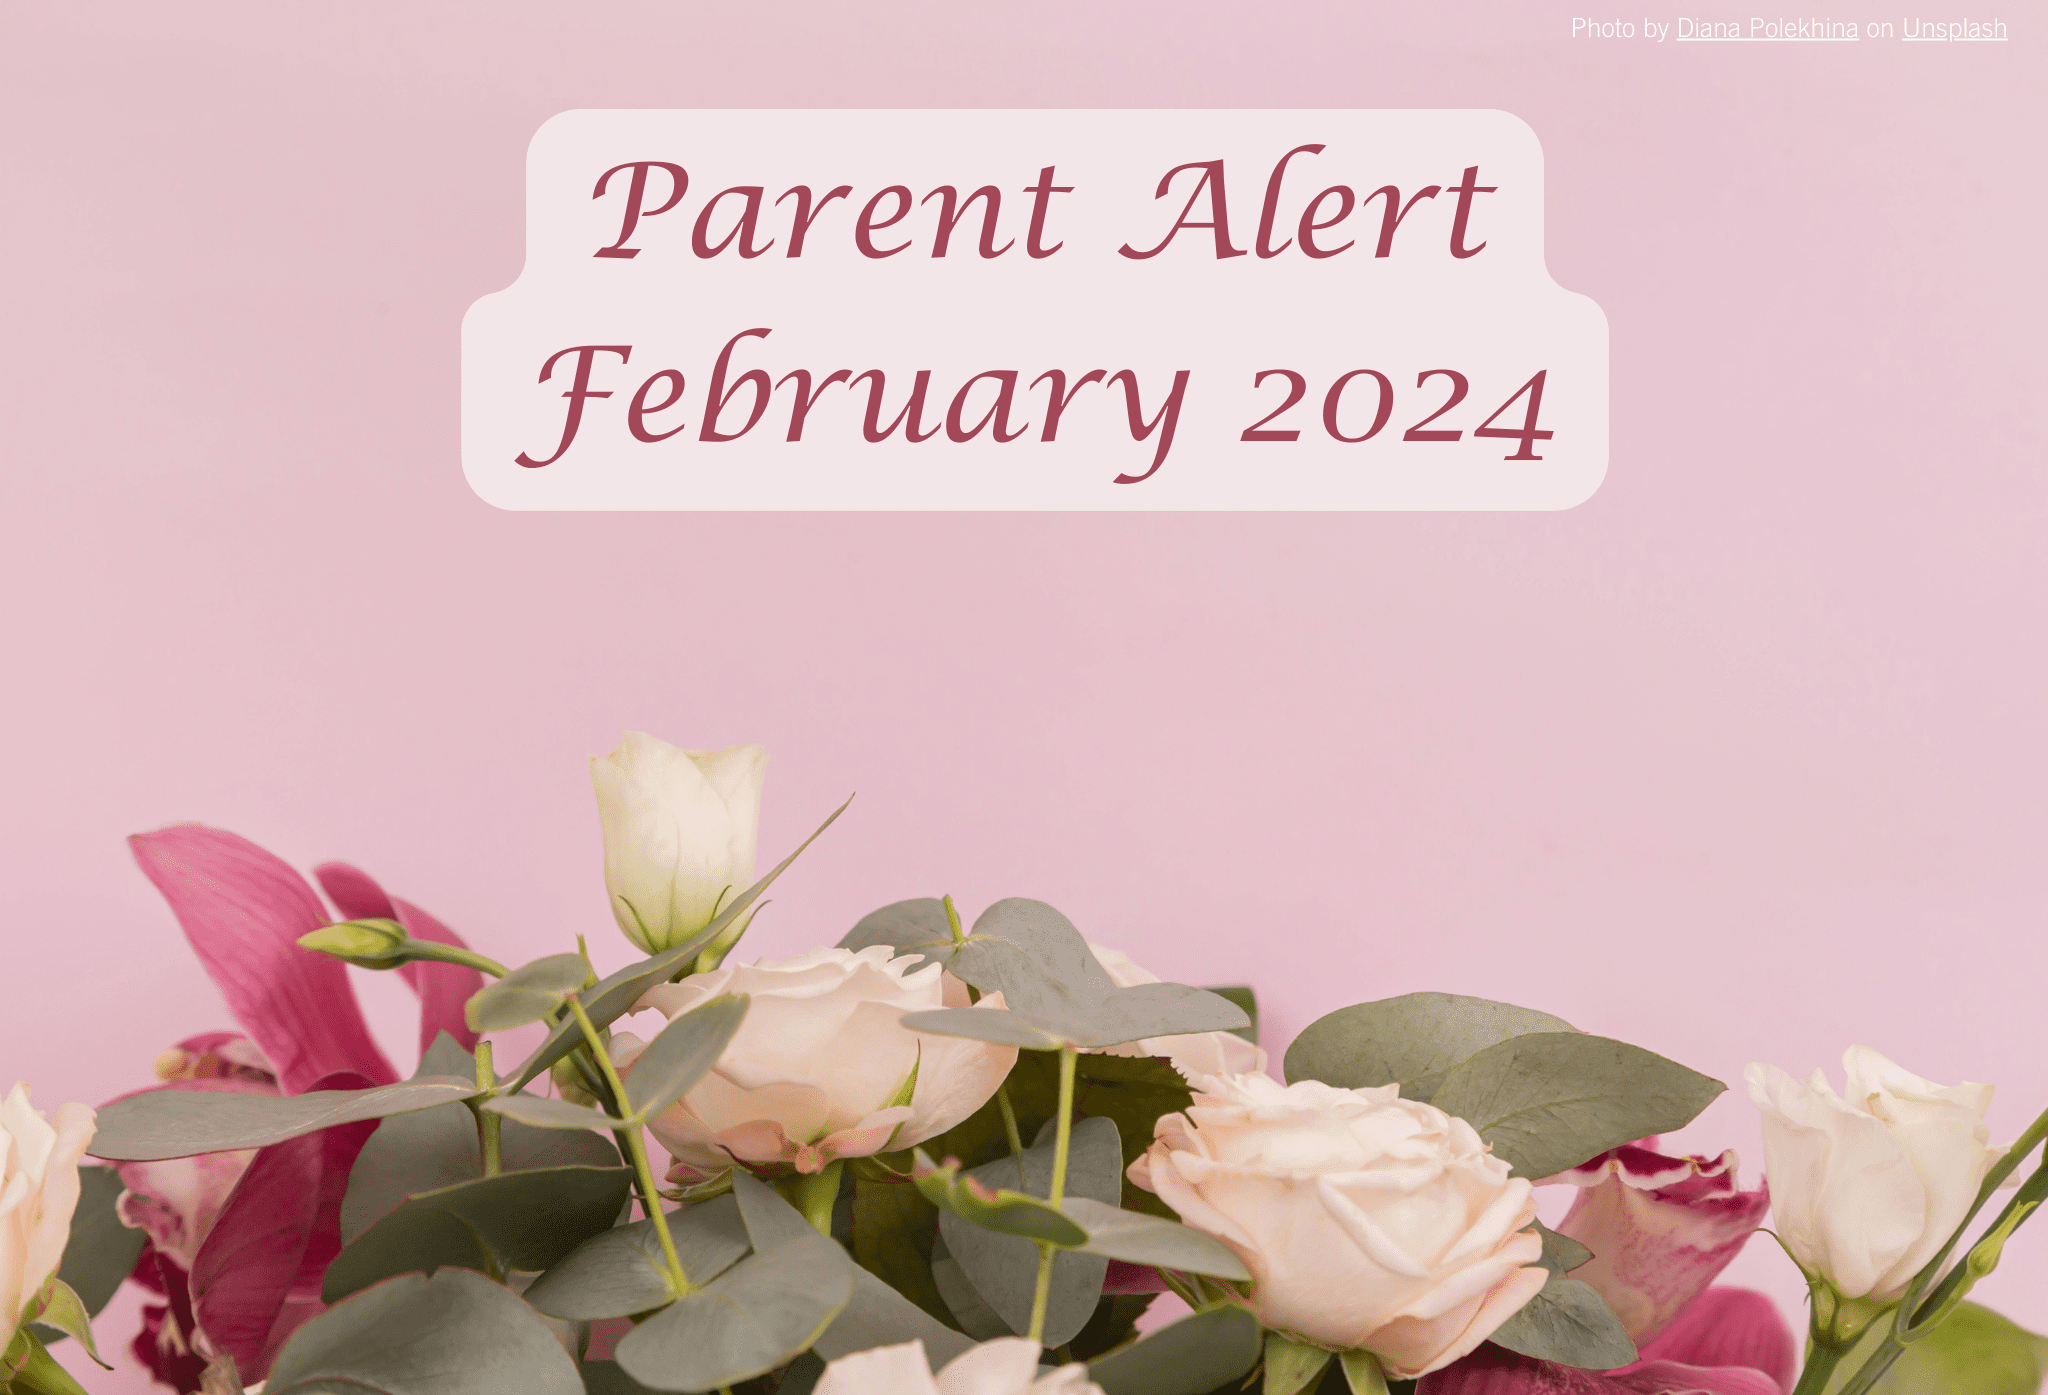 Parent Alert December 2023 Background Image (8)